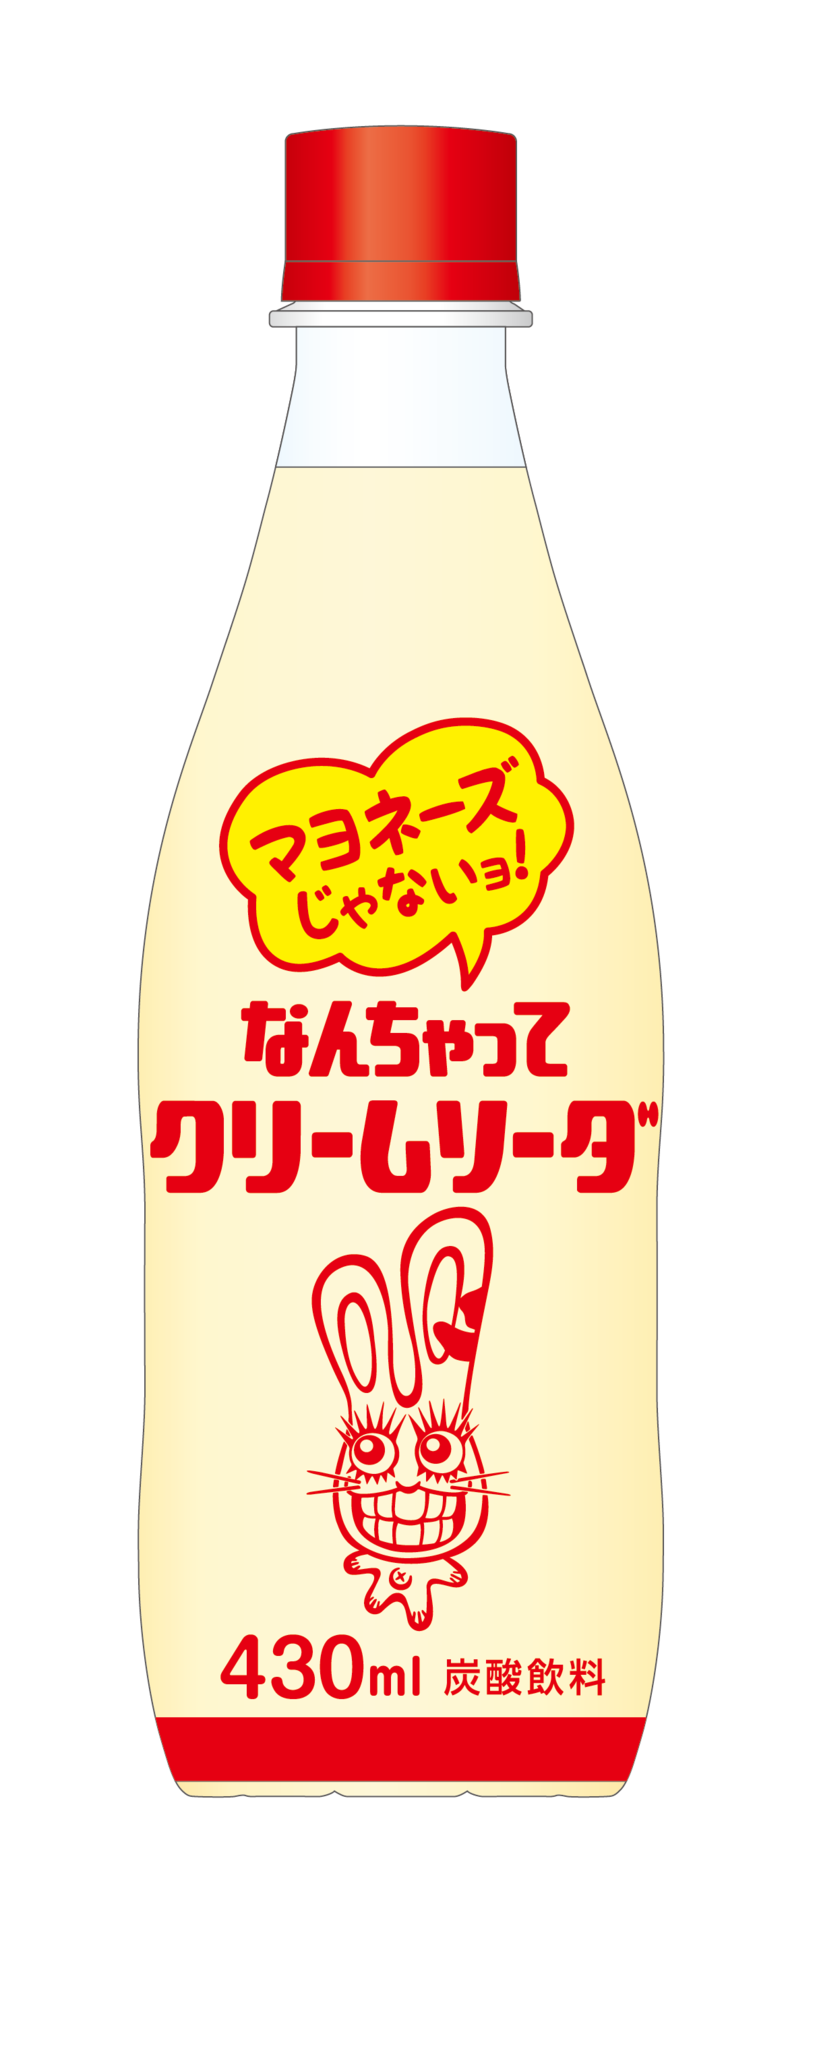 見た目がマヨネーズそっくりの炭酸飲料 なんちゃってクリームソーダ 再発売 株式会社チェリオコーポレーションのプレスリリース